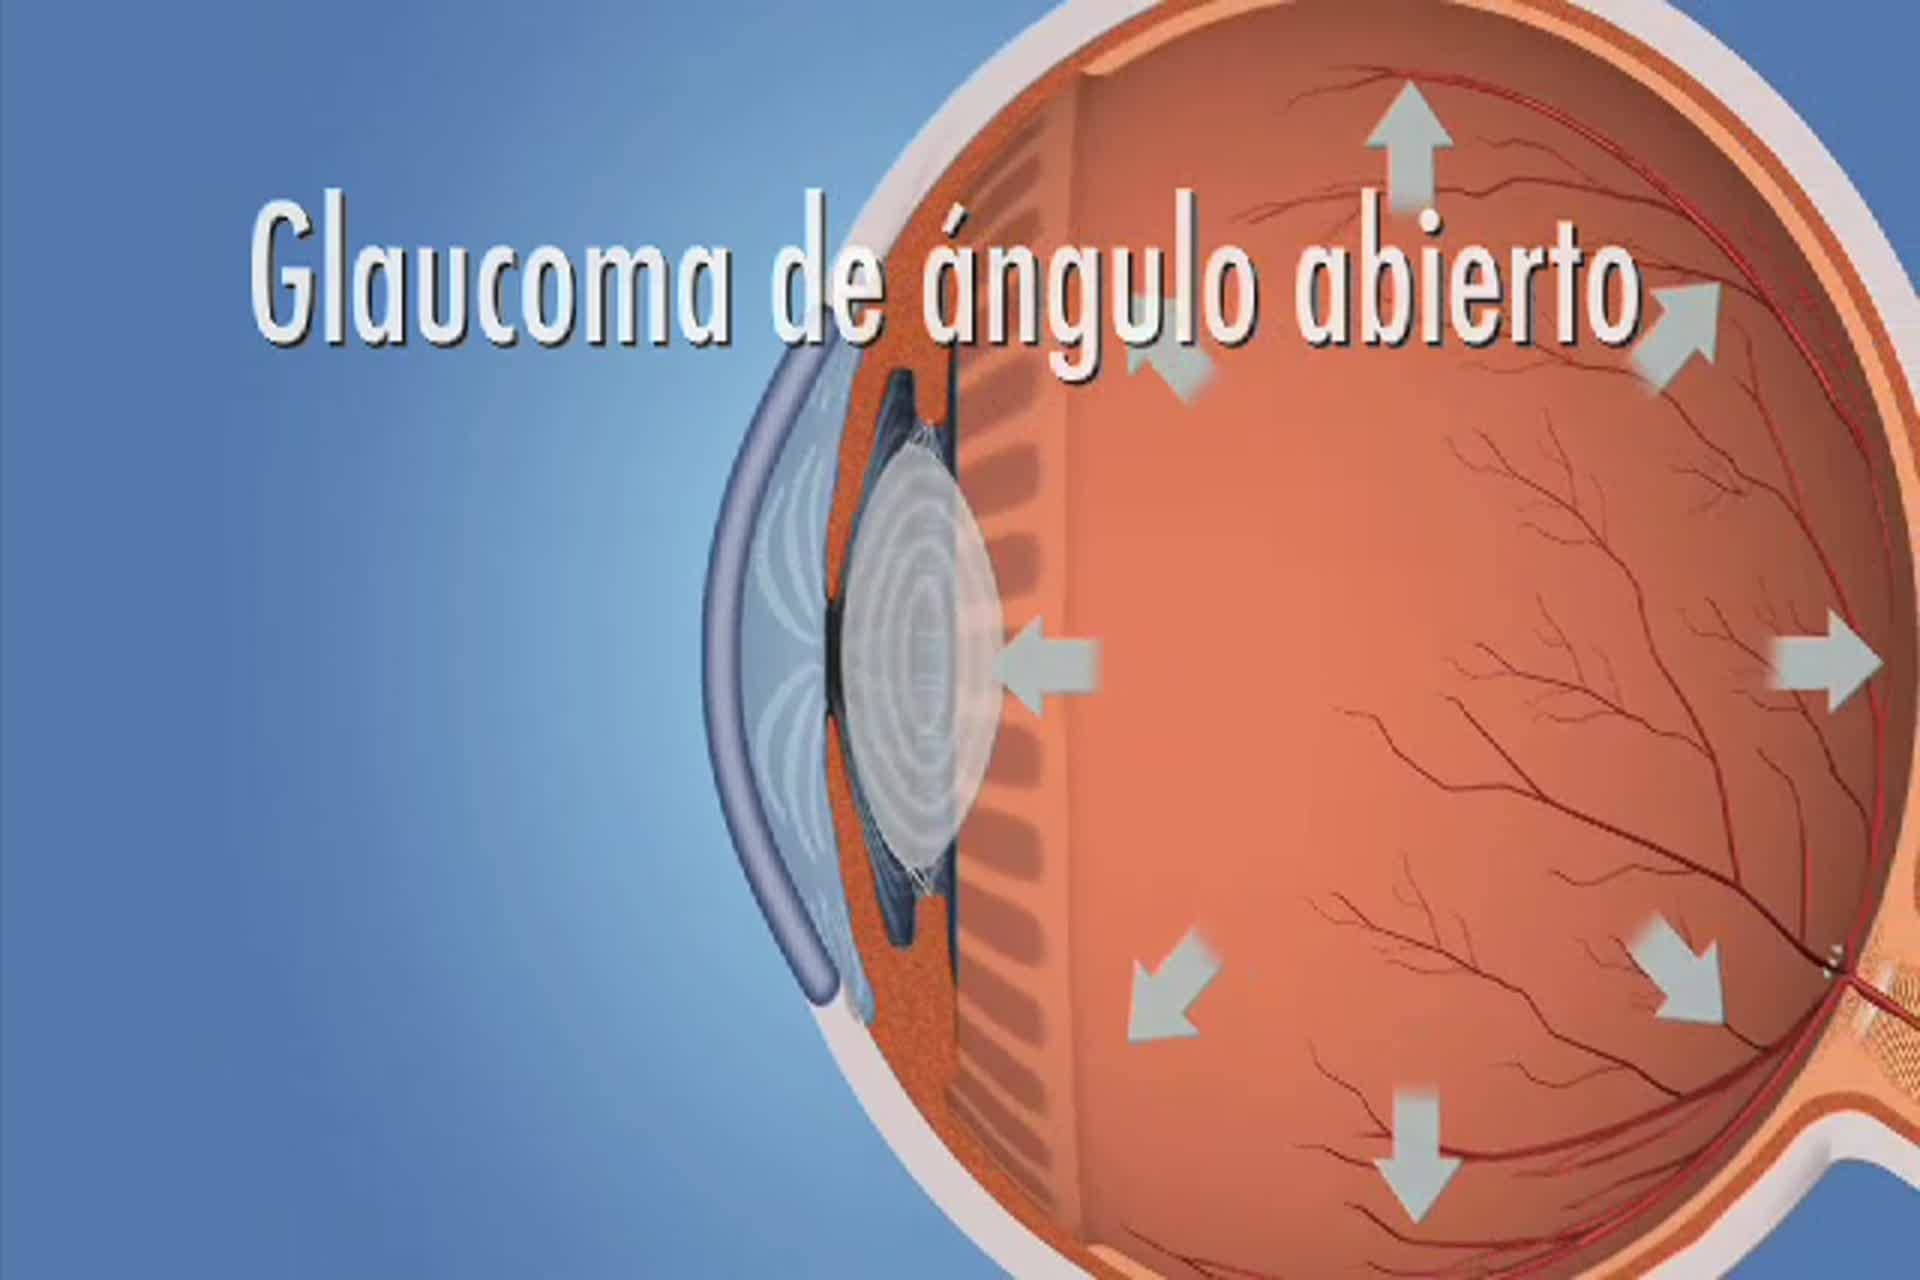 Glaucoma - ¿Qué es el glaucoma de ángulo abierto?